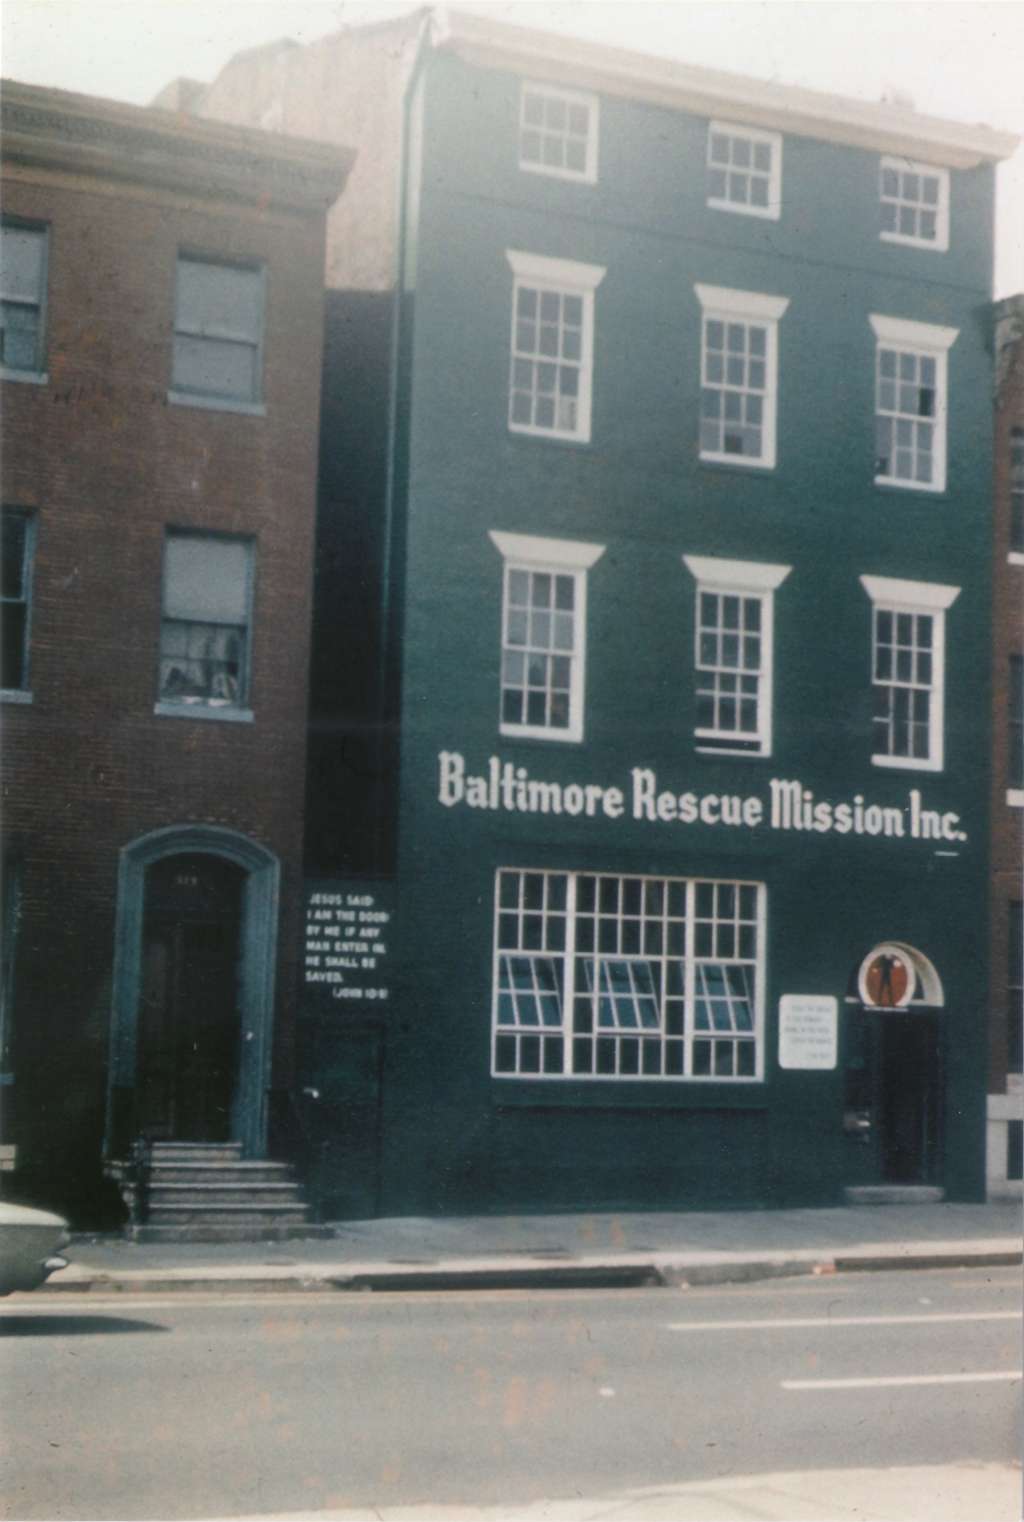 The Baltimore Rescue Mission building, circa 1963